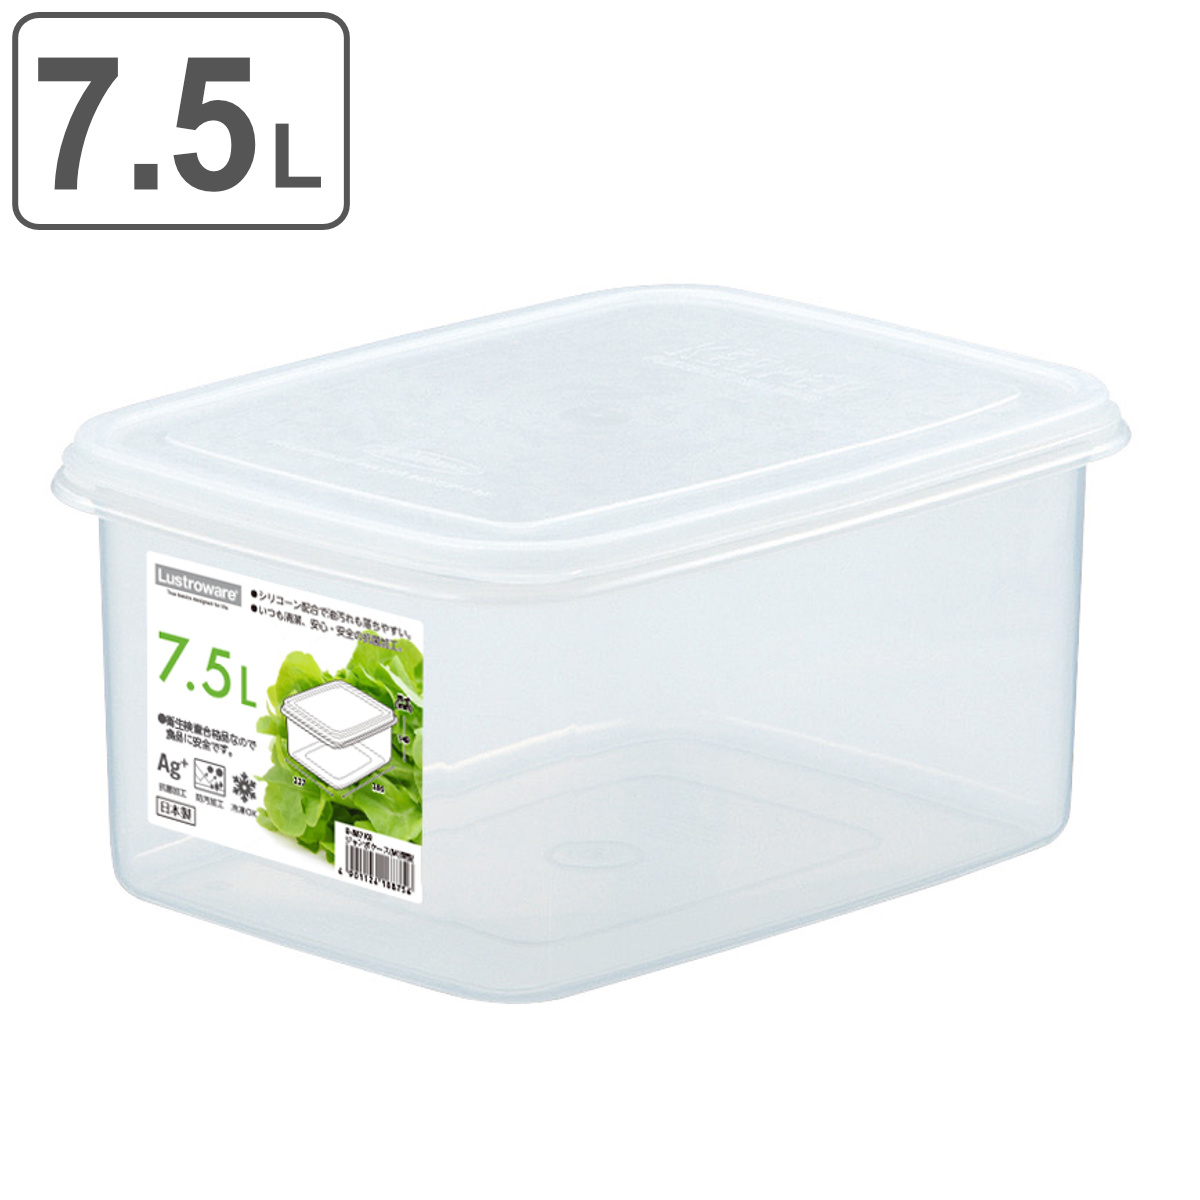 保存容器 7.5L ジャンボケース M 深型 （ 日本製 抗菌 防汚 プラスチック フードコンテナ 保存 容器 シール容器 プラスチック保存容器 プ